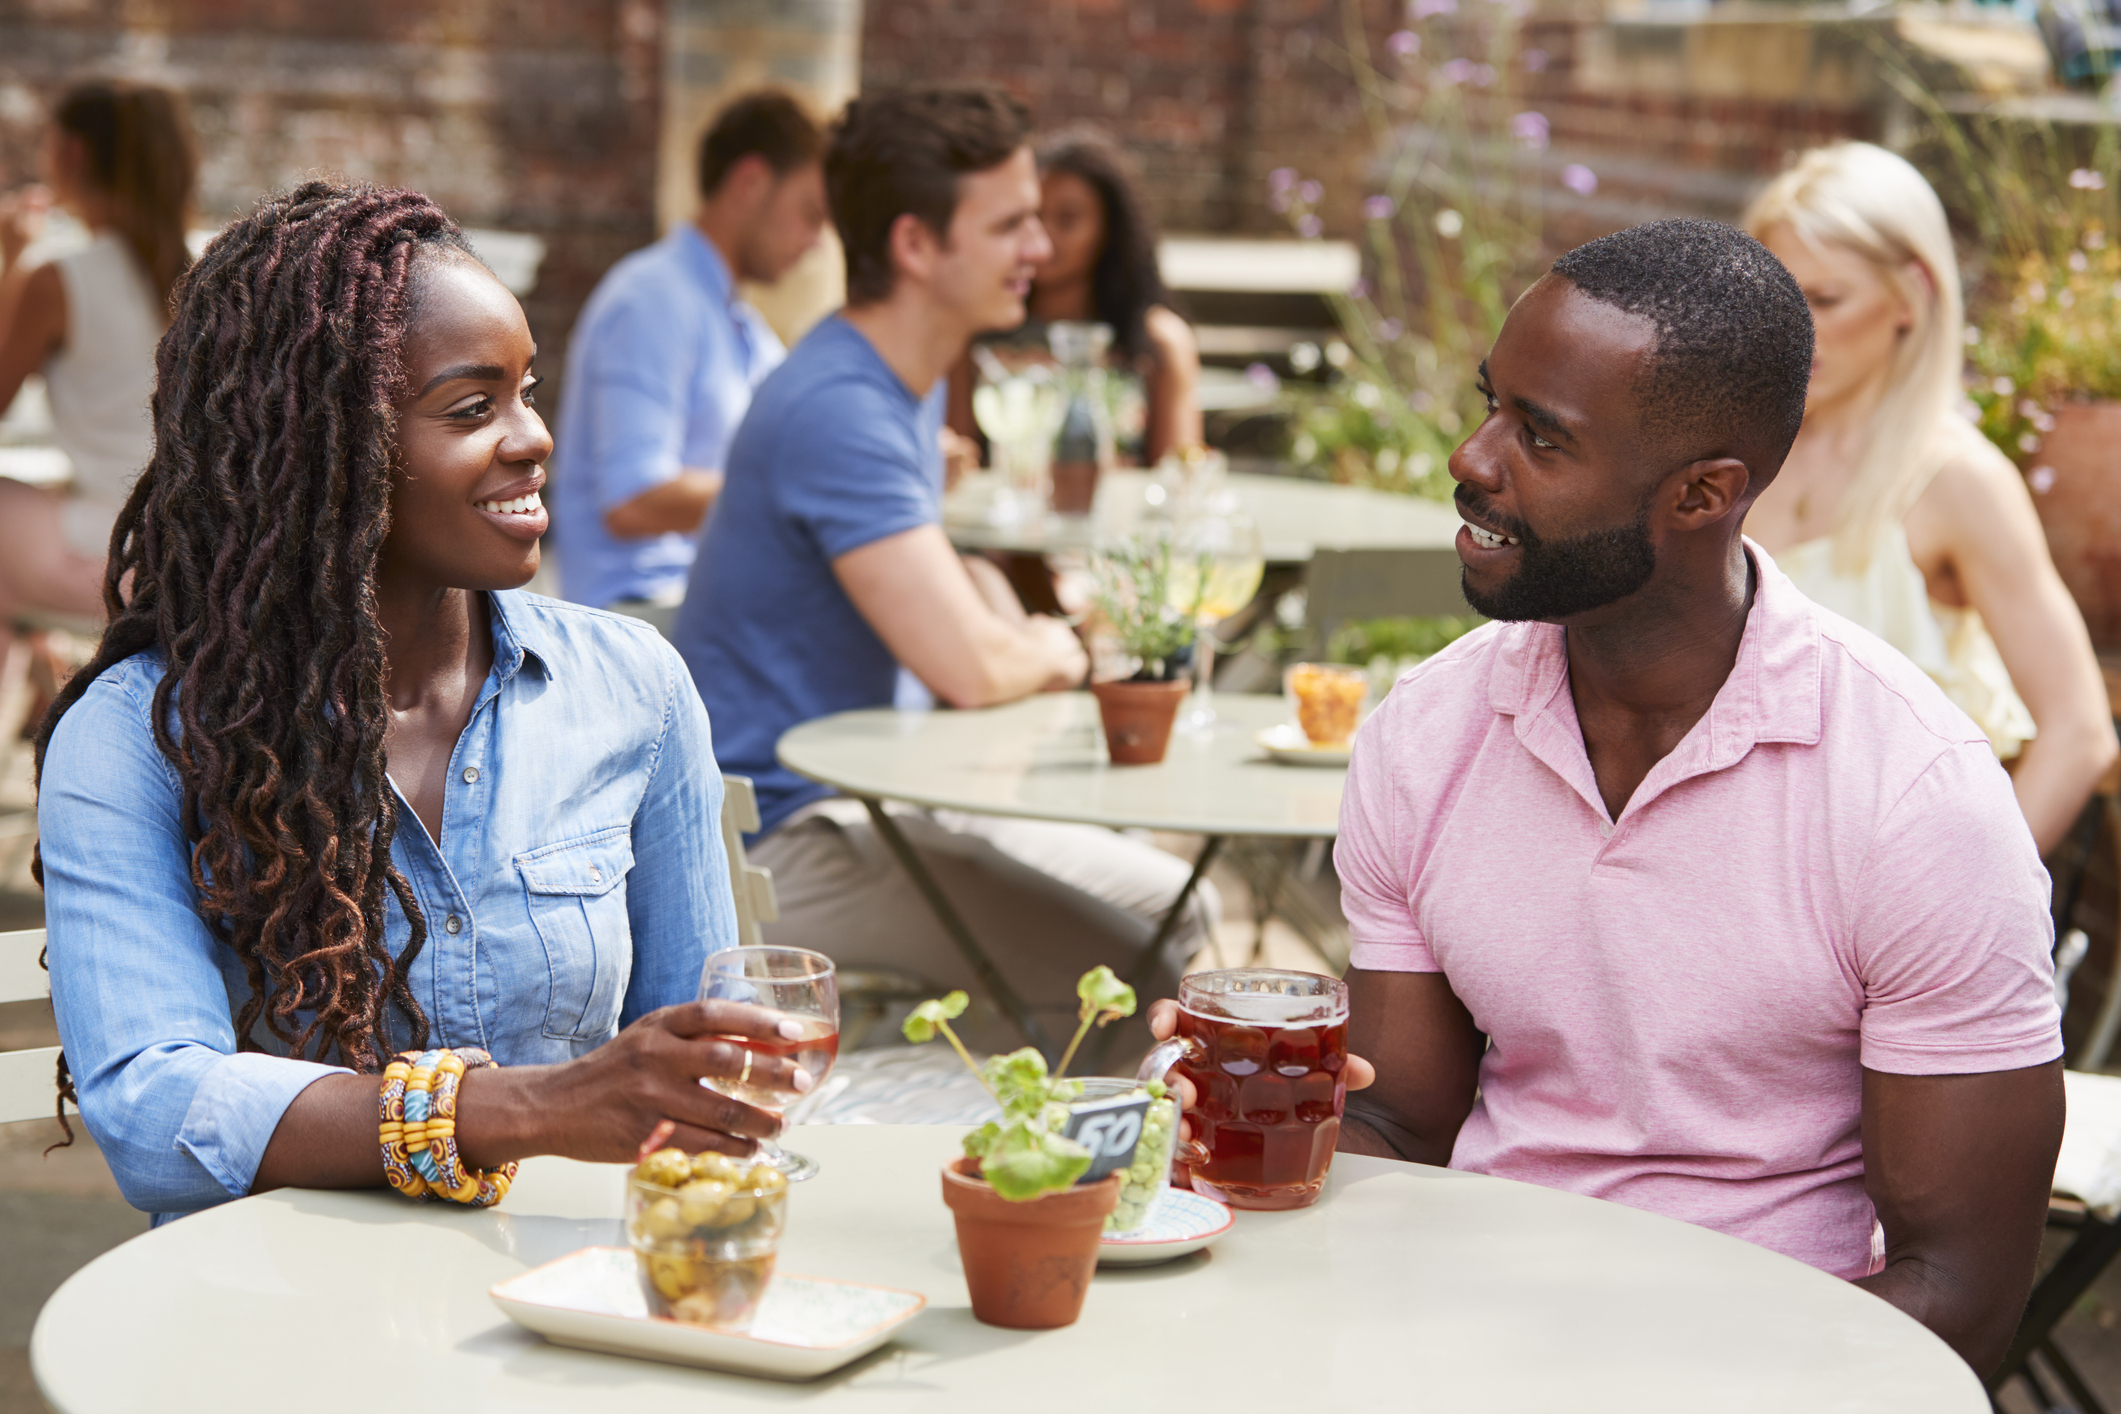 speed dating los angeles recenze randit s někým s bipolární poruchou II